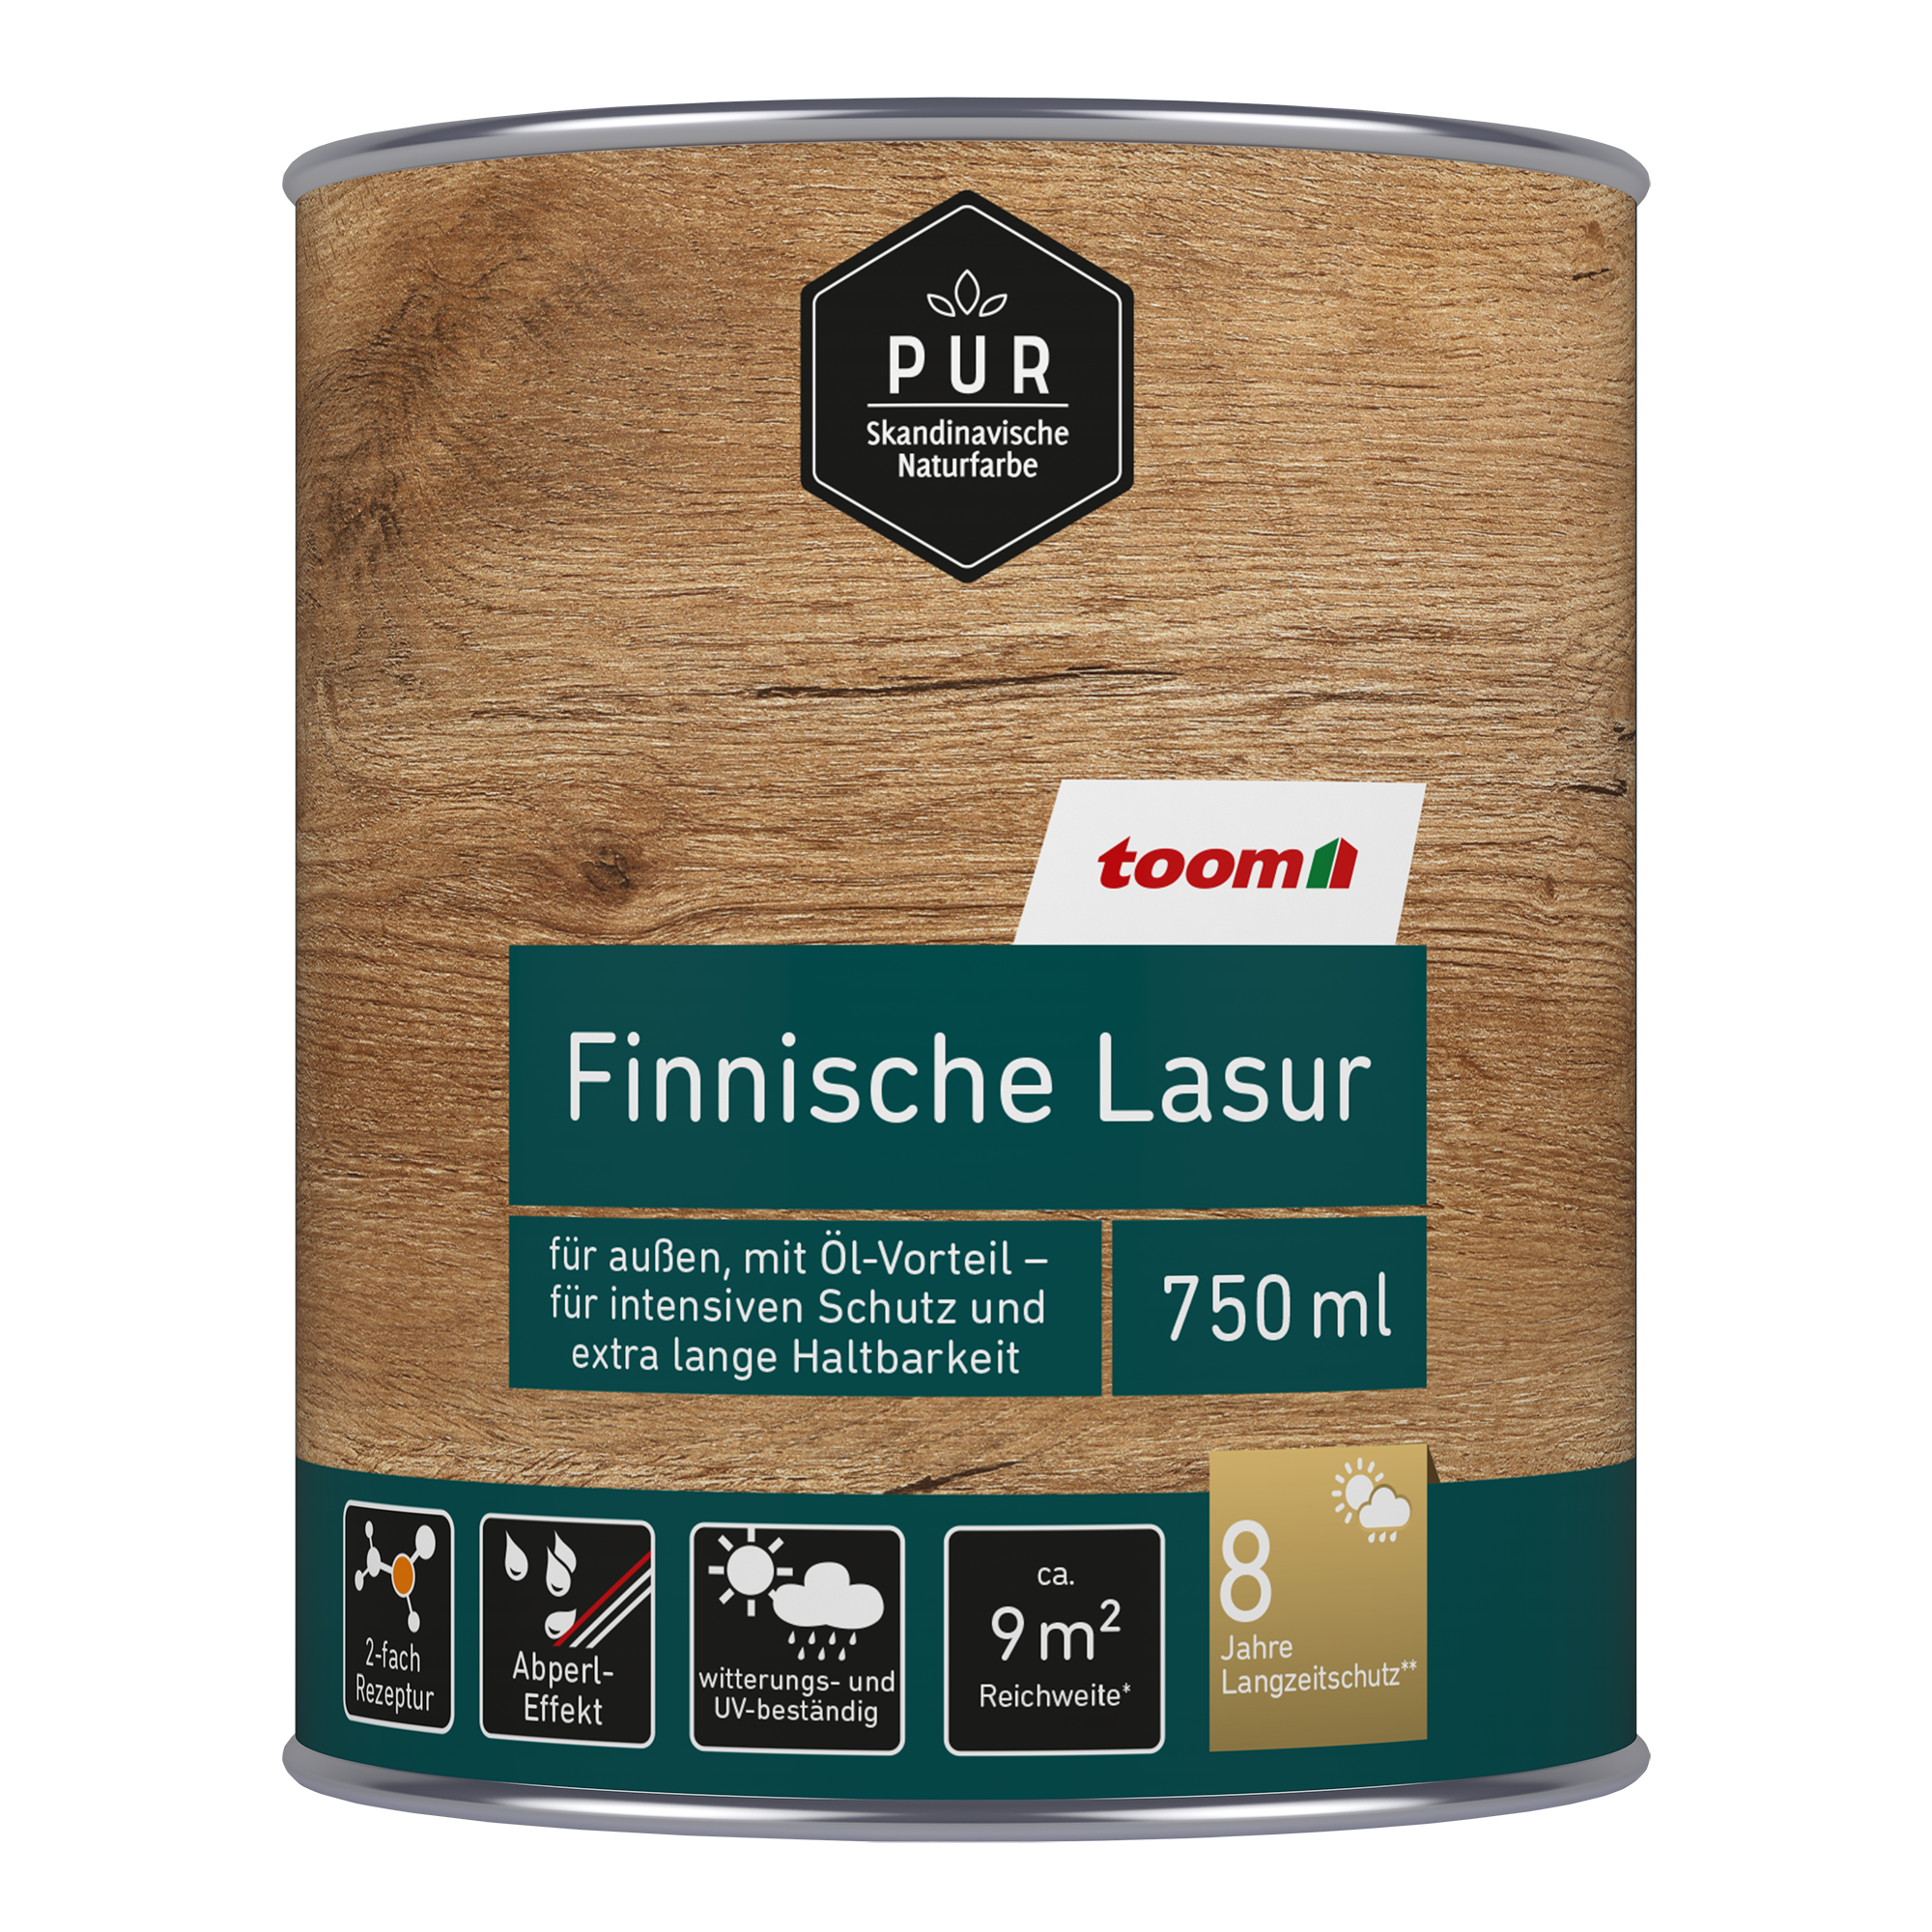 Finnische Lasur weiß 750 ml + product picture